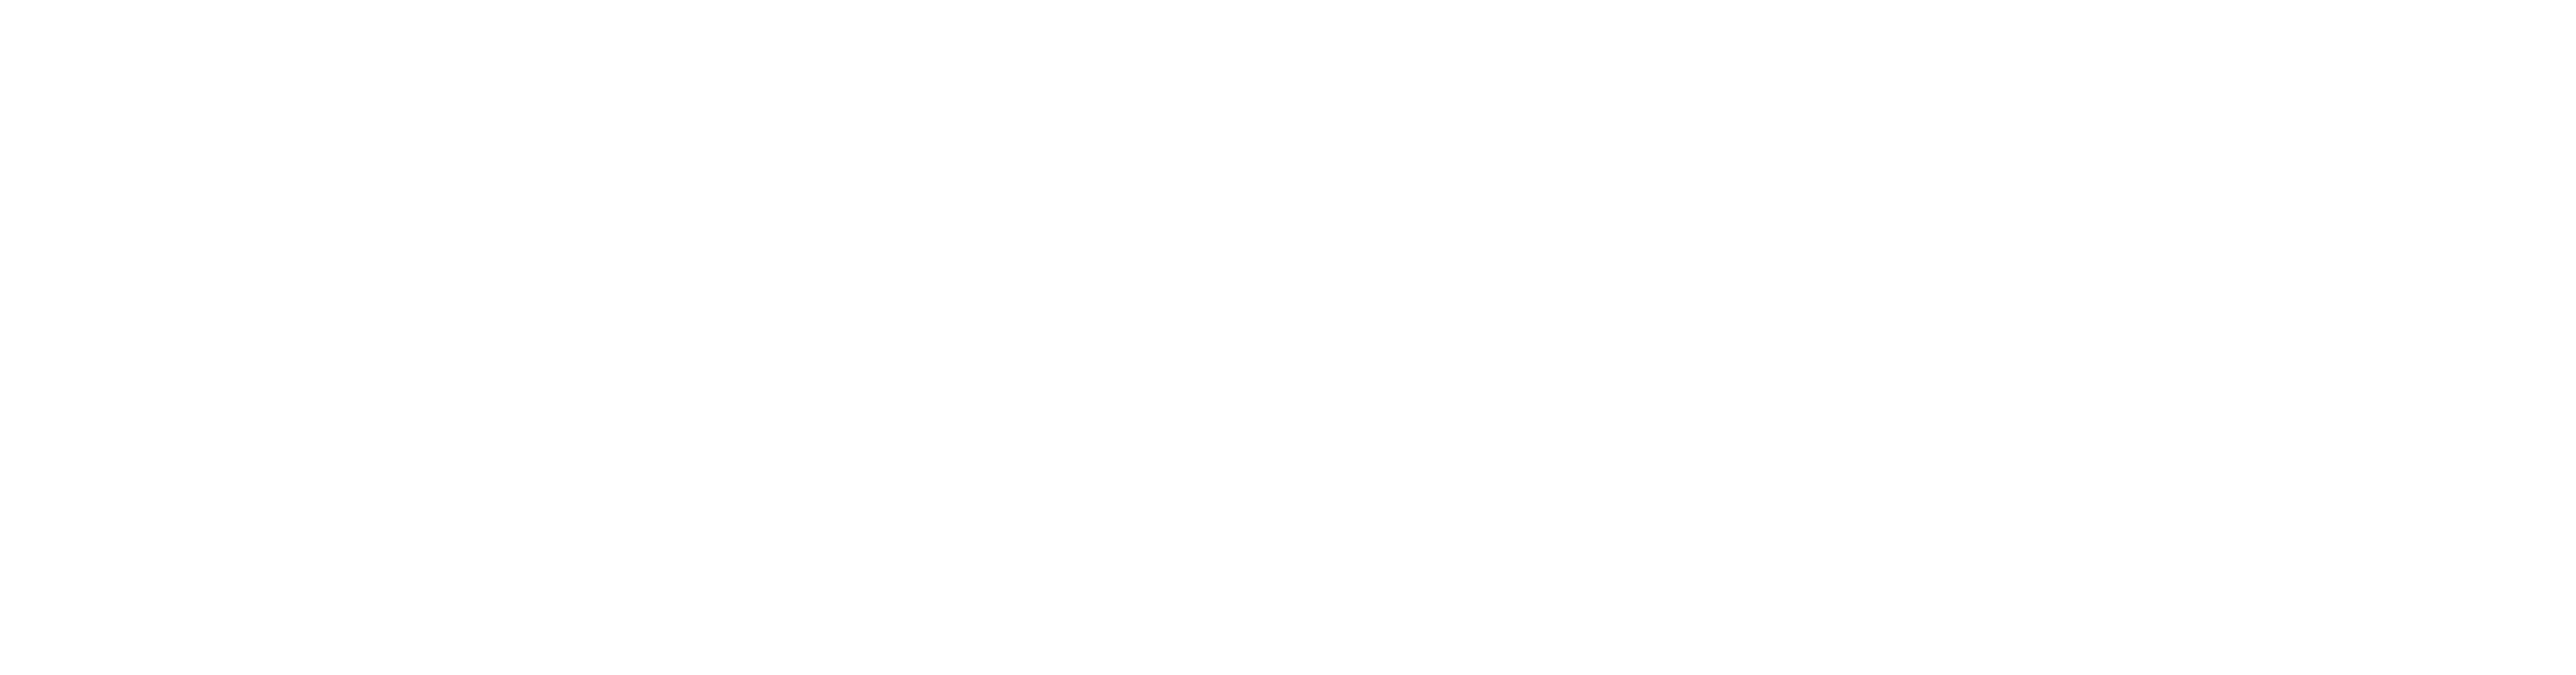 Lazada logo in white